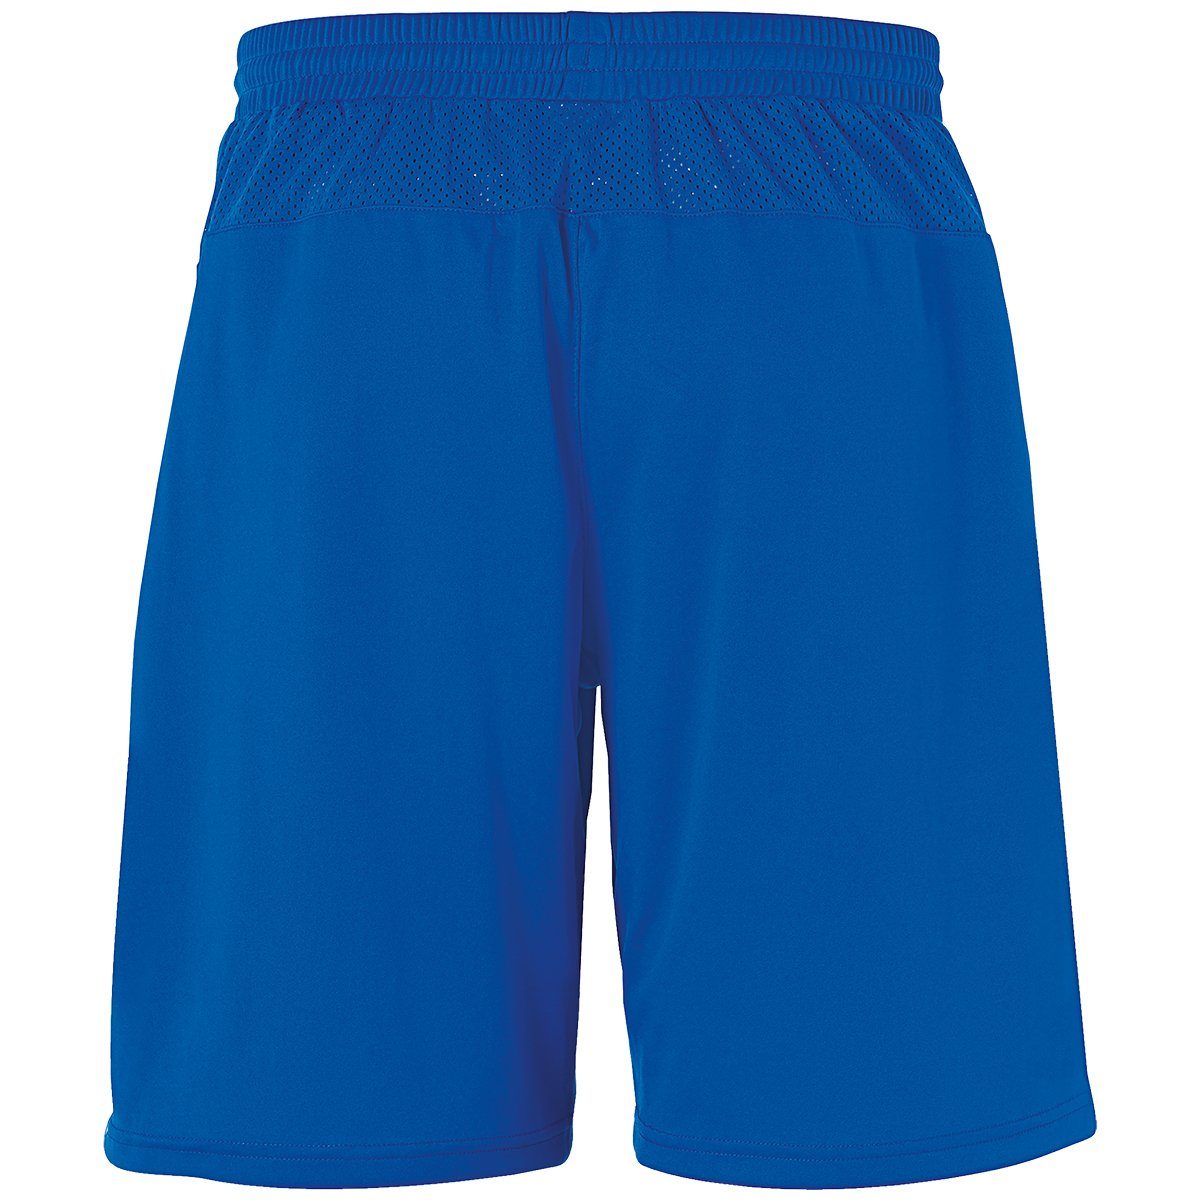 PERFORMANCE SHORTS Shorts uhlsport Shorts uhlsport azurblau/weiß